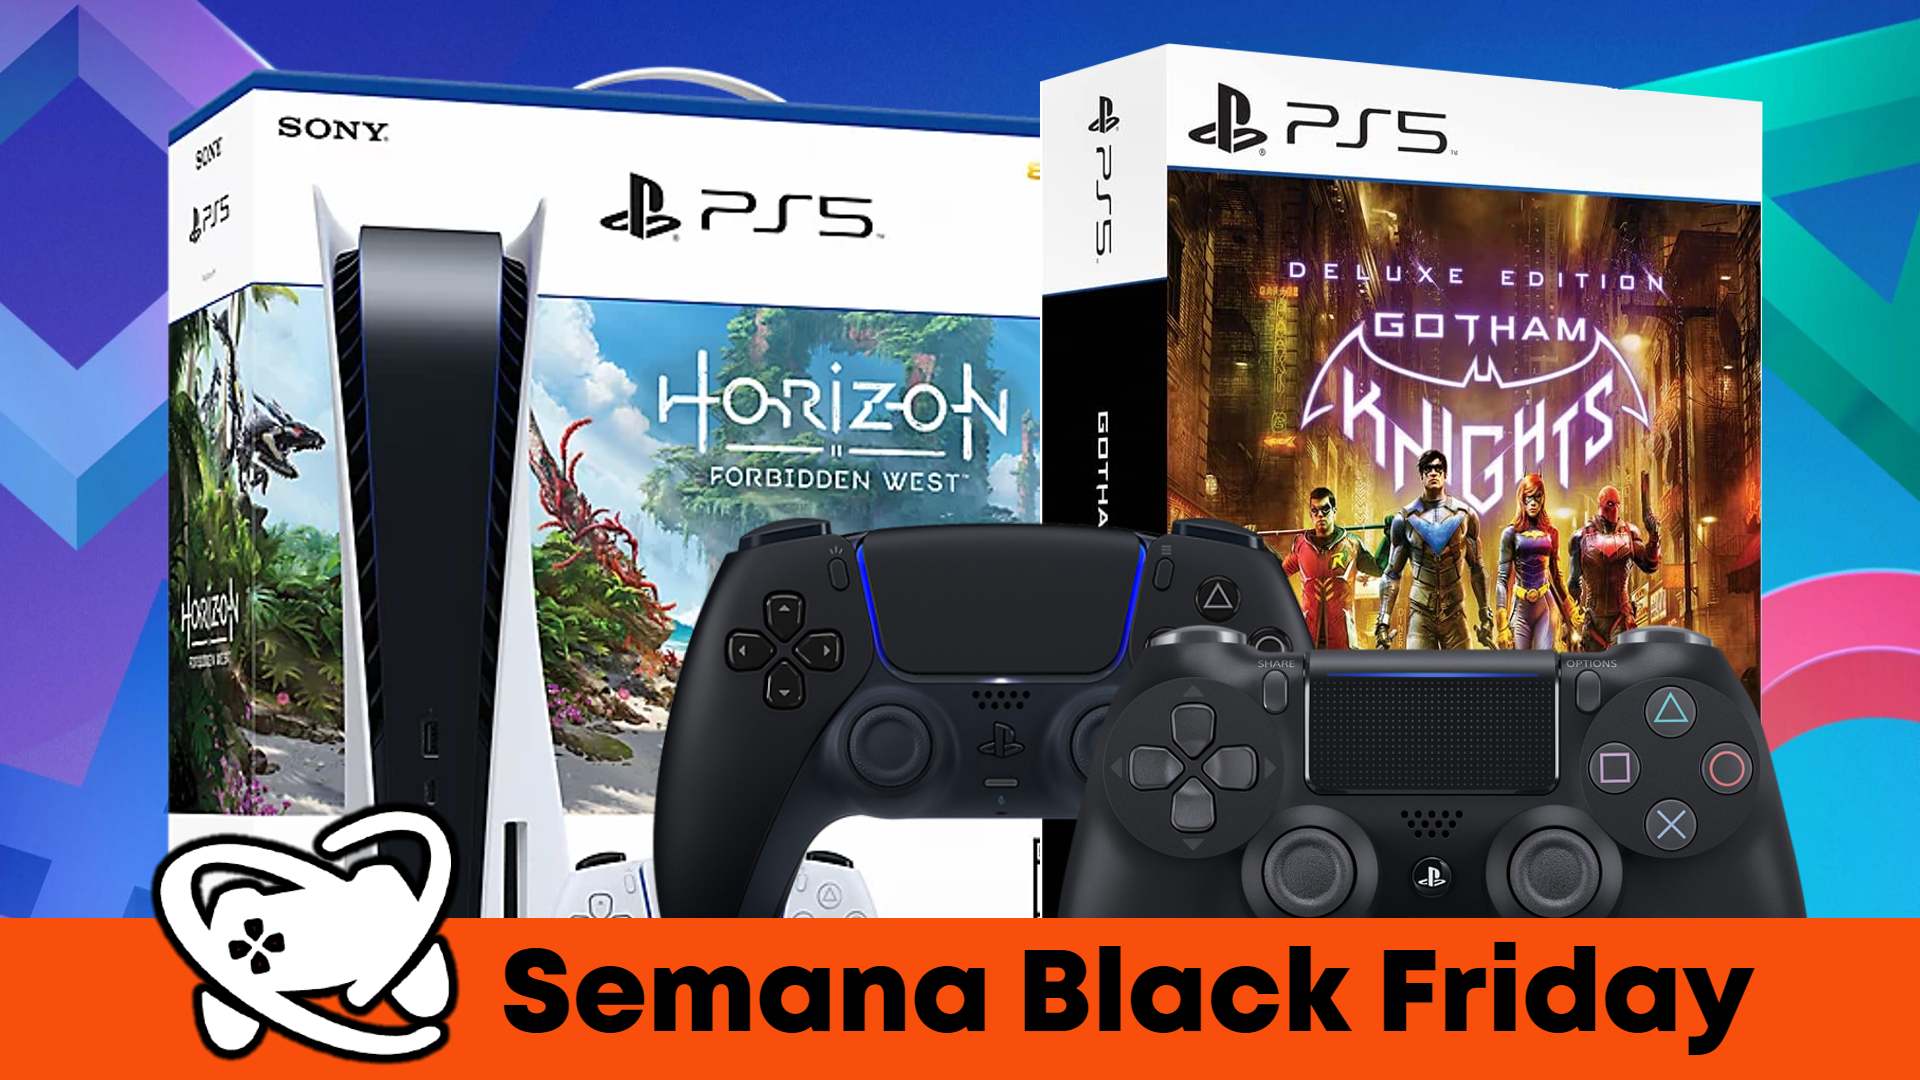 Black Friday na : os jogos de PS4 em promoção